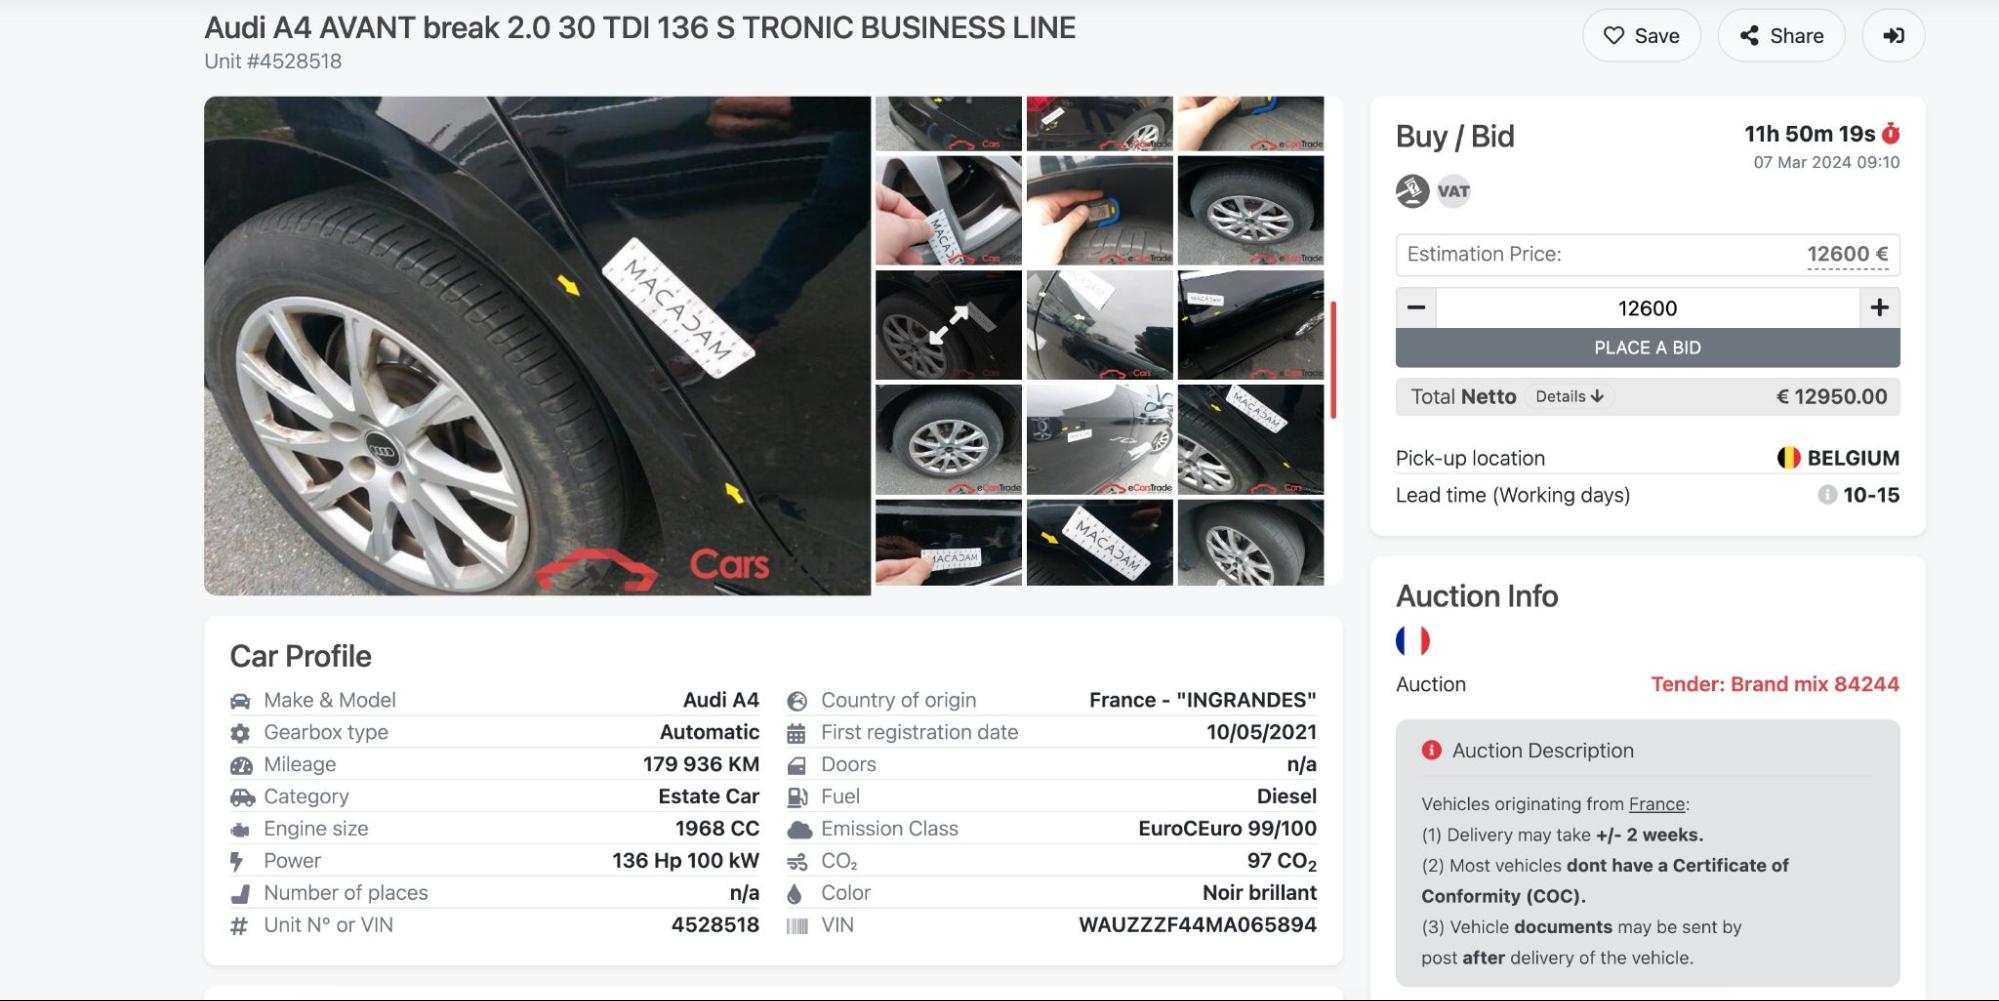 képernyőkép, amely az ecarstrade aukciókon szereplő autókról elérhető fényképeket és információkat mutat be